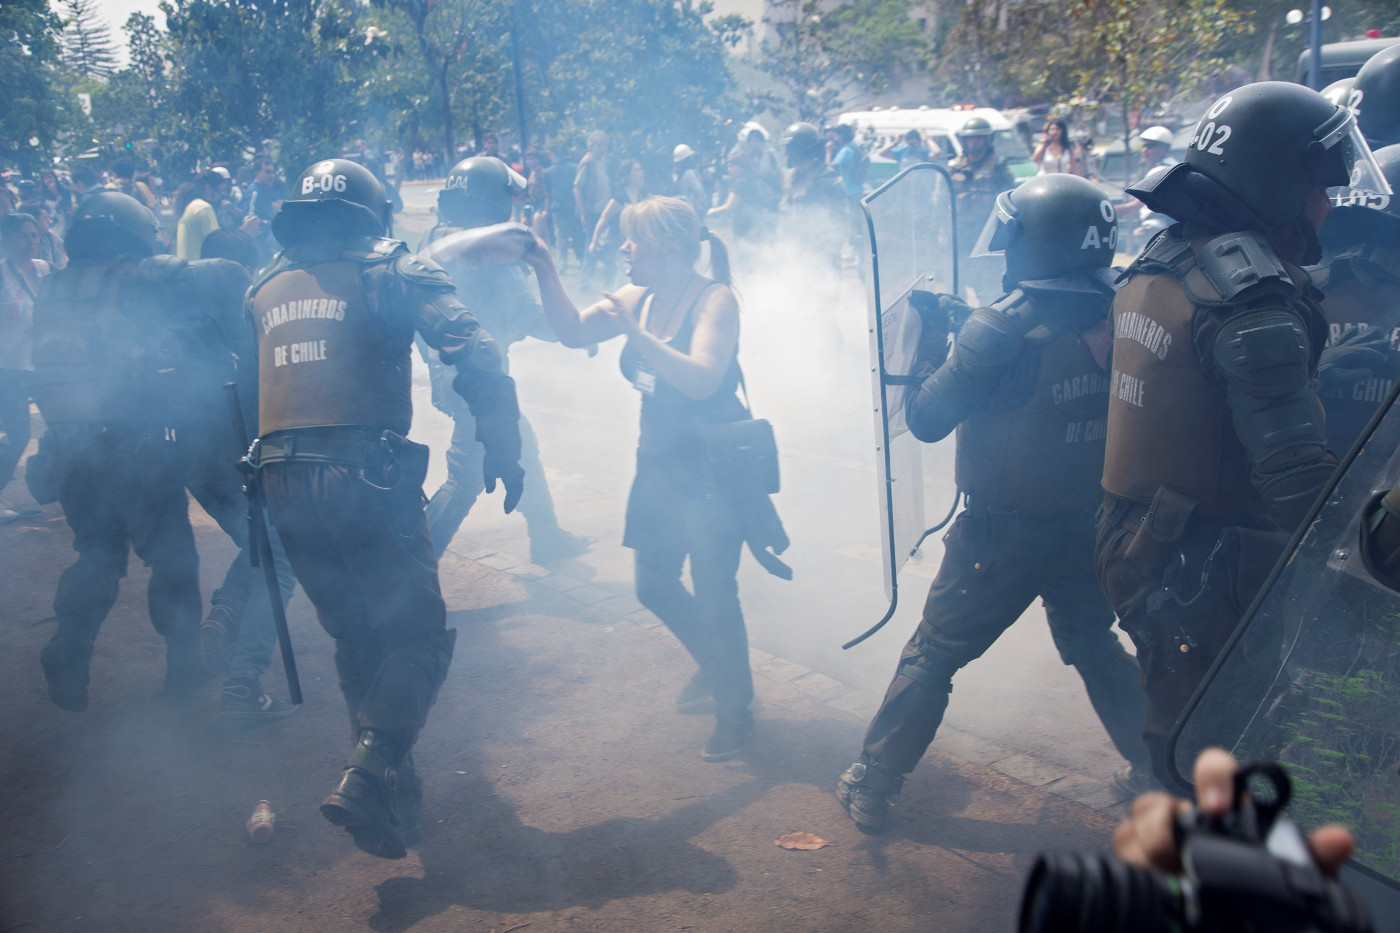 Bildungsproteste im Jahr 2012 in Chiles Hauptstadt Santiago. Die Polizei geht mit Tränengas gegen die Demonstrierenden vor. Foto (Symbolbild): Adveniat/Jürgen Escher